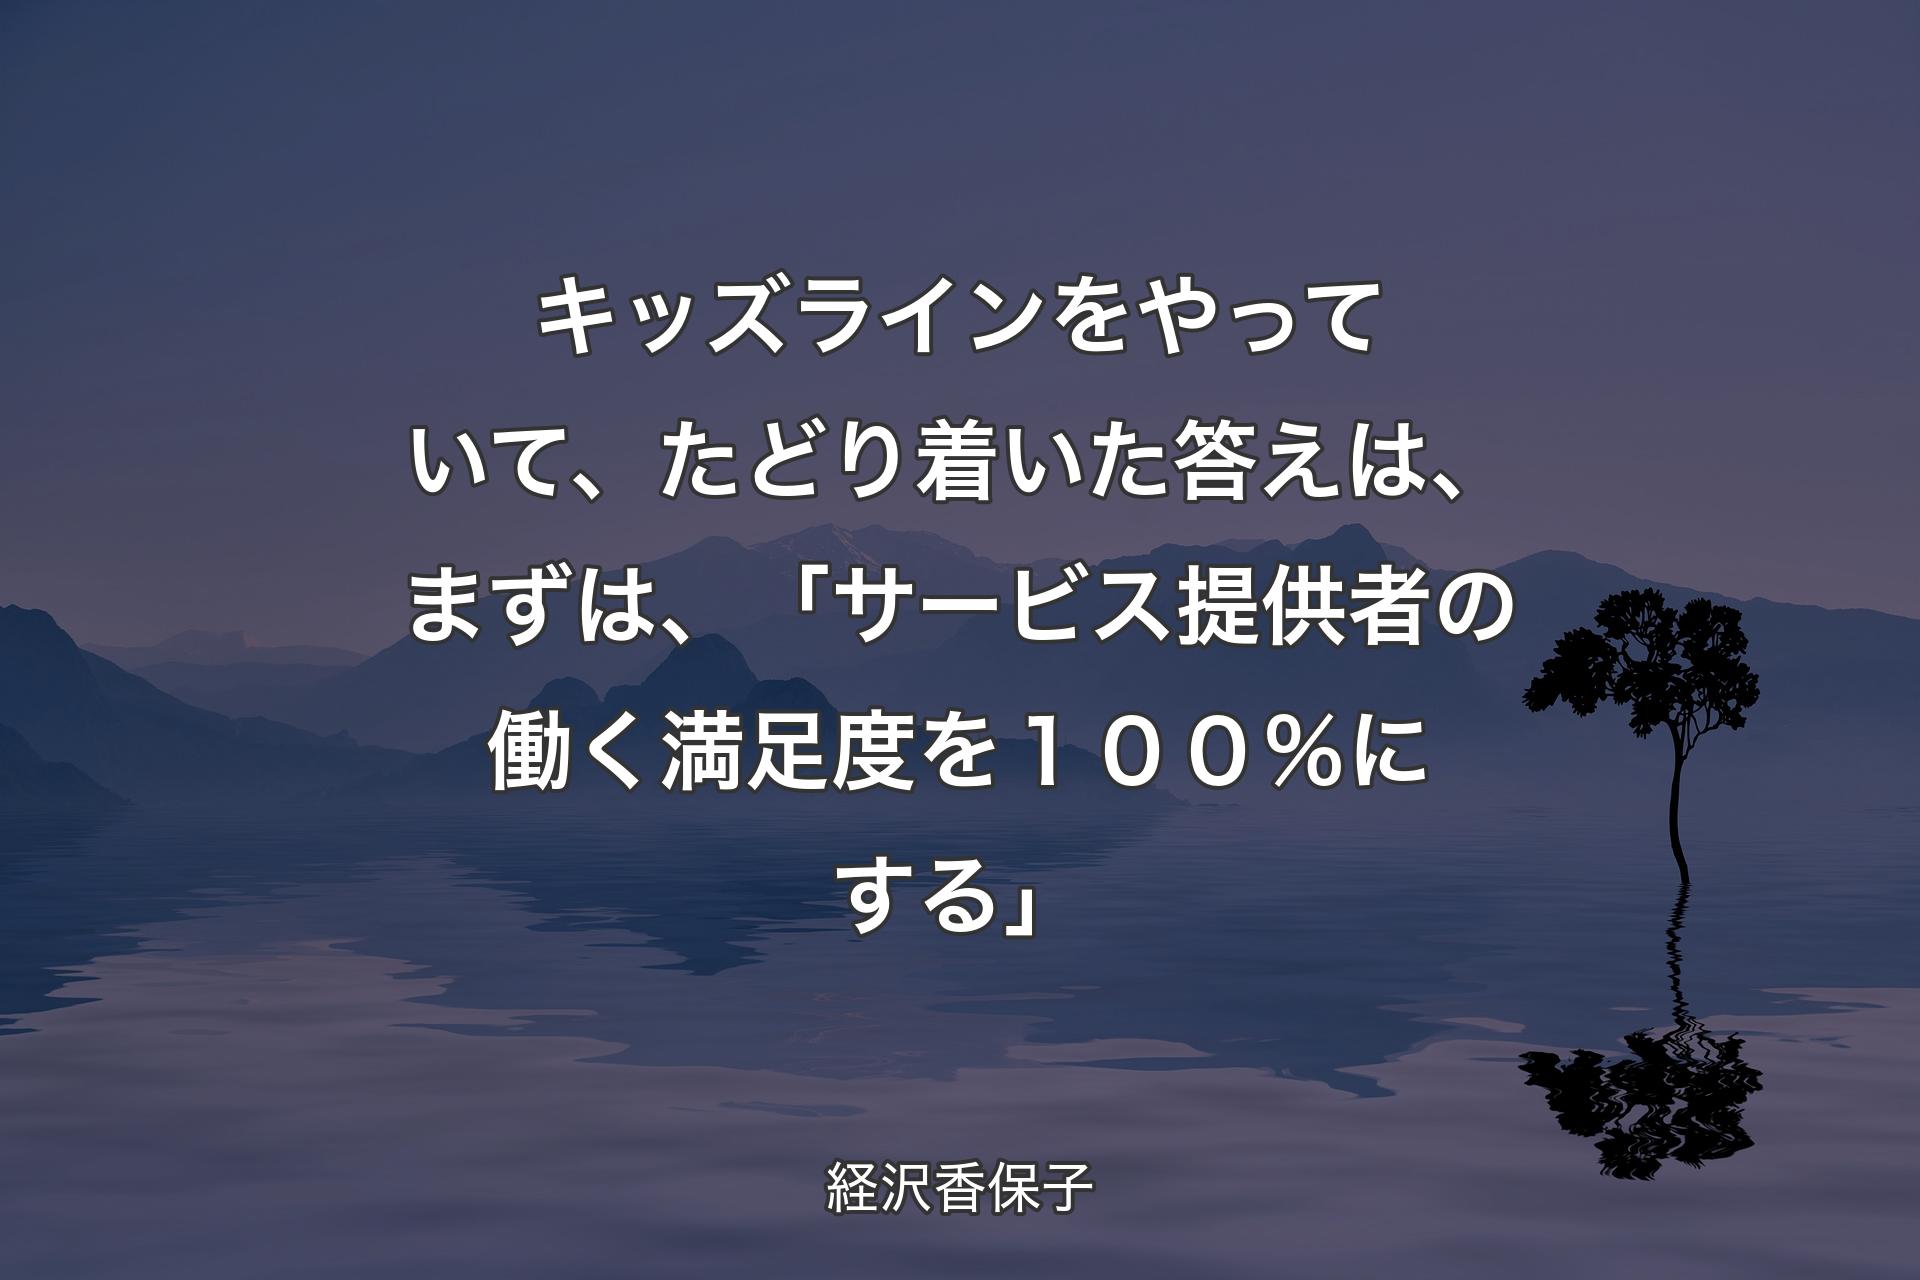 【背景4】キッズラインをやっていて、たどり着いた答えは、まずは、「サービス提供者の働く満足度を１００％にする」 - 経沢香保子